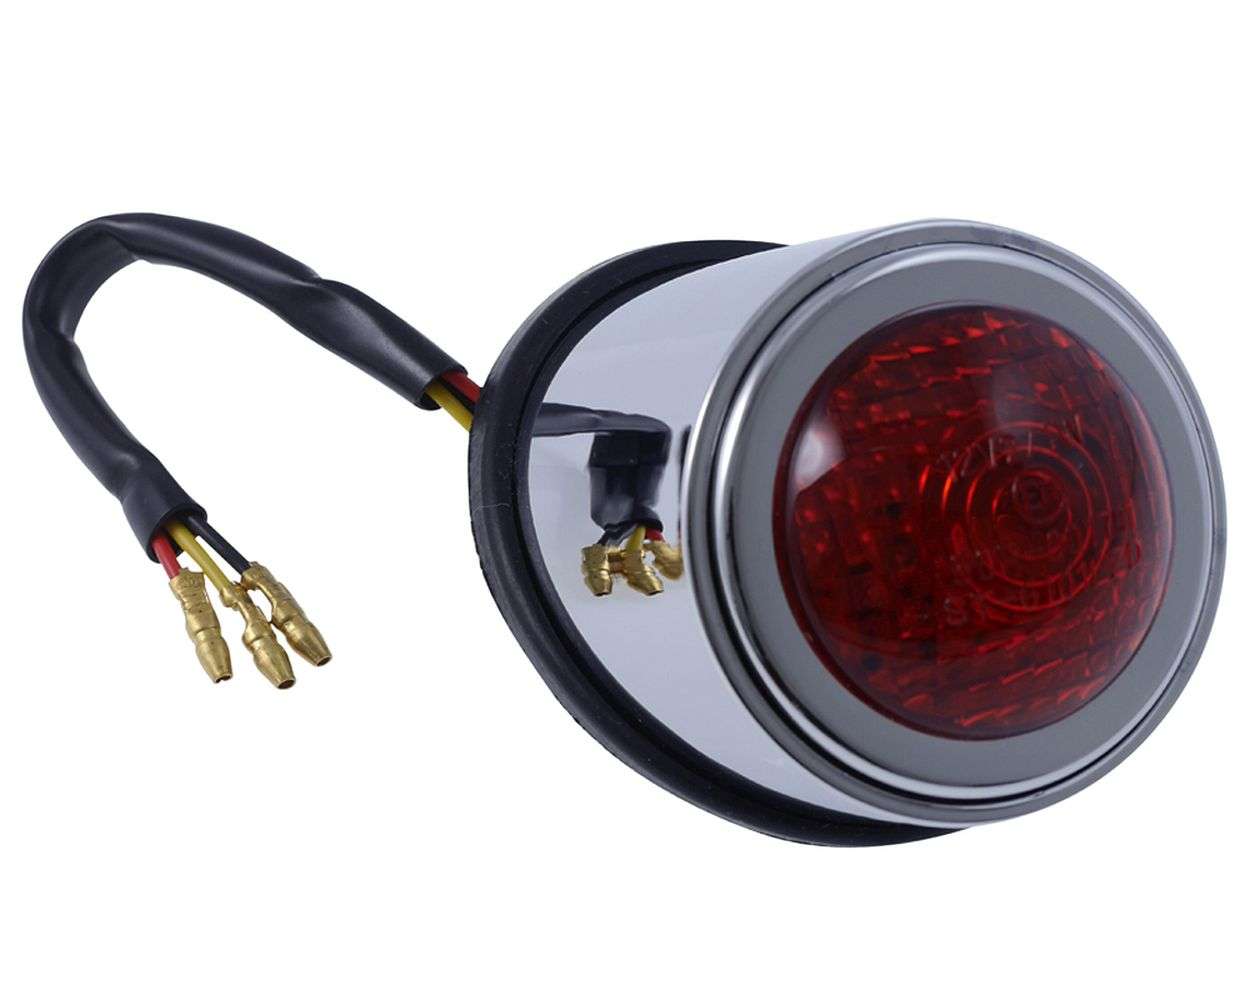 Rote LED-Rückleuchte für 50-, 125- und Scooter-Motorräder